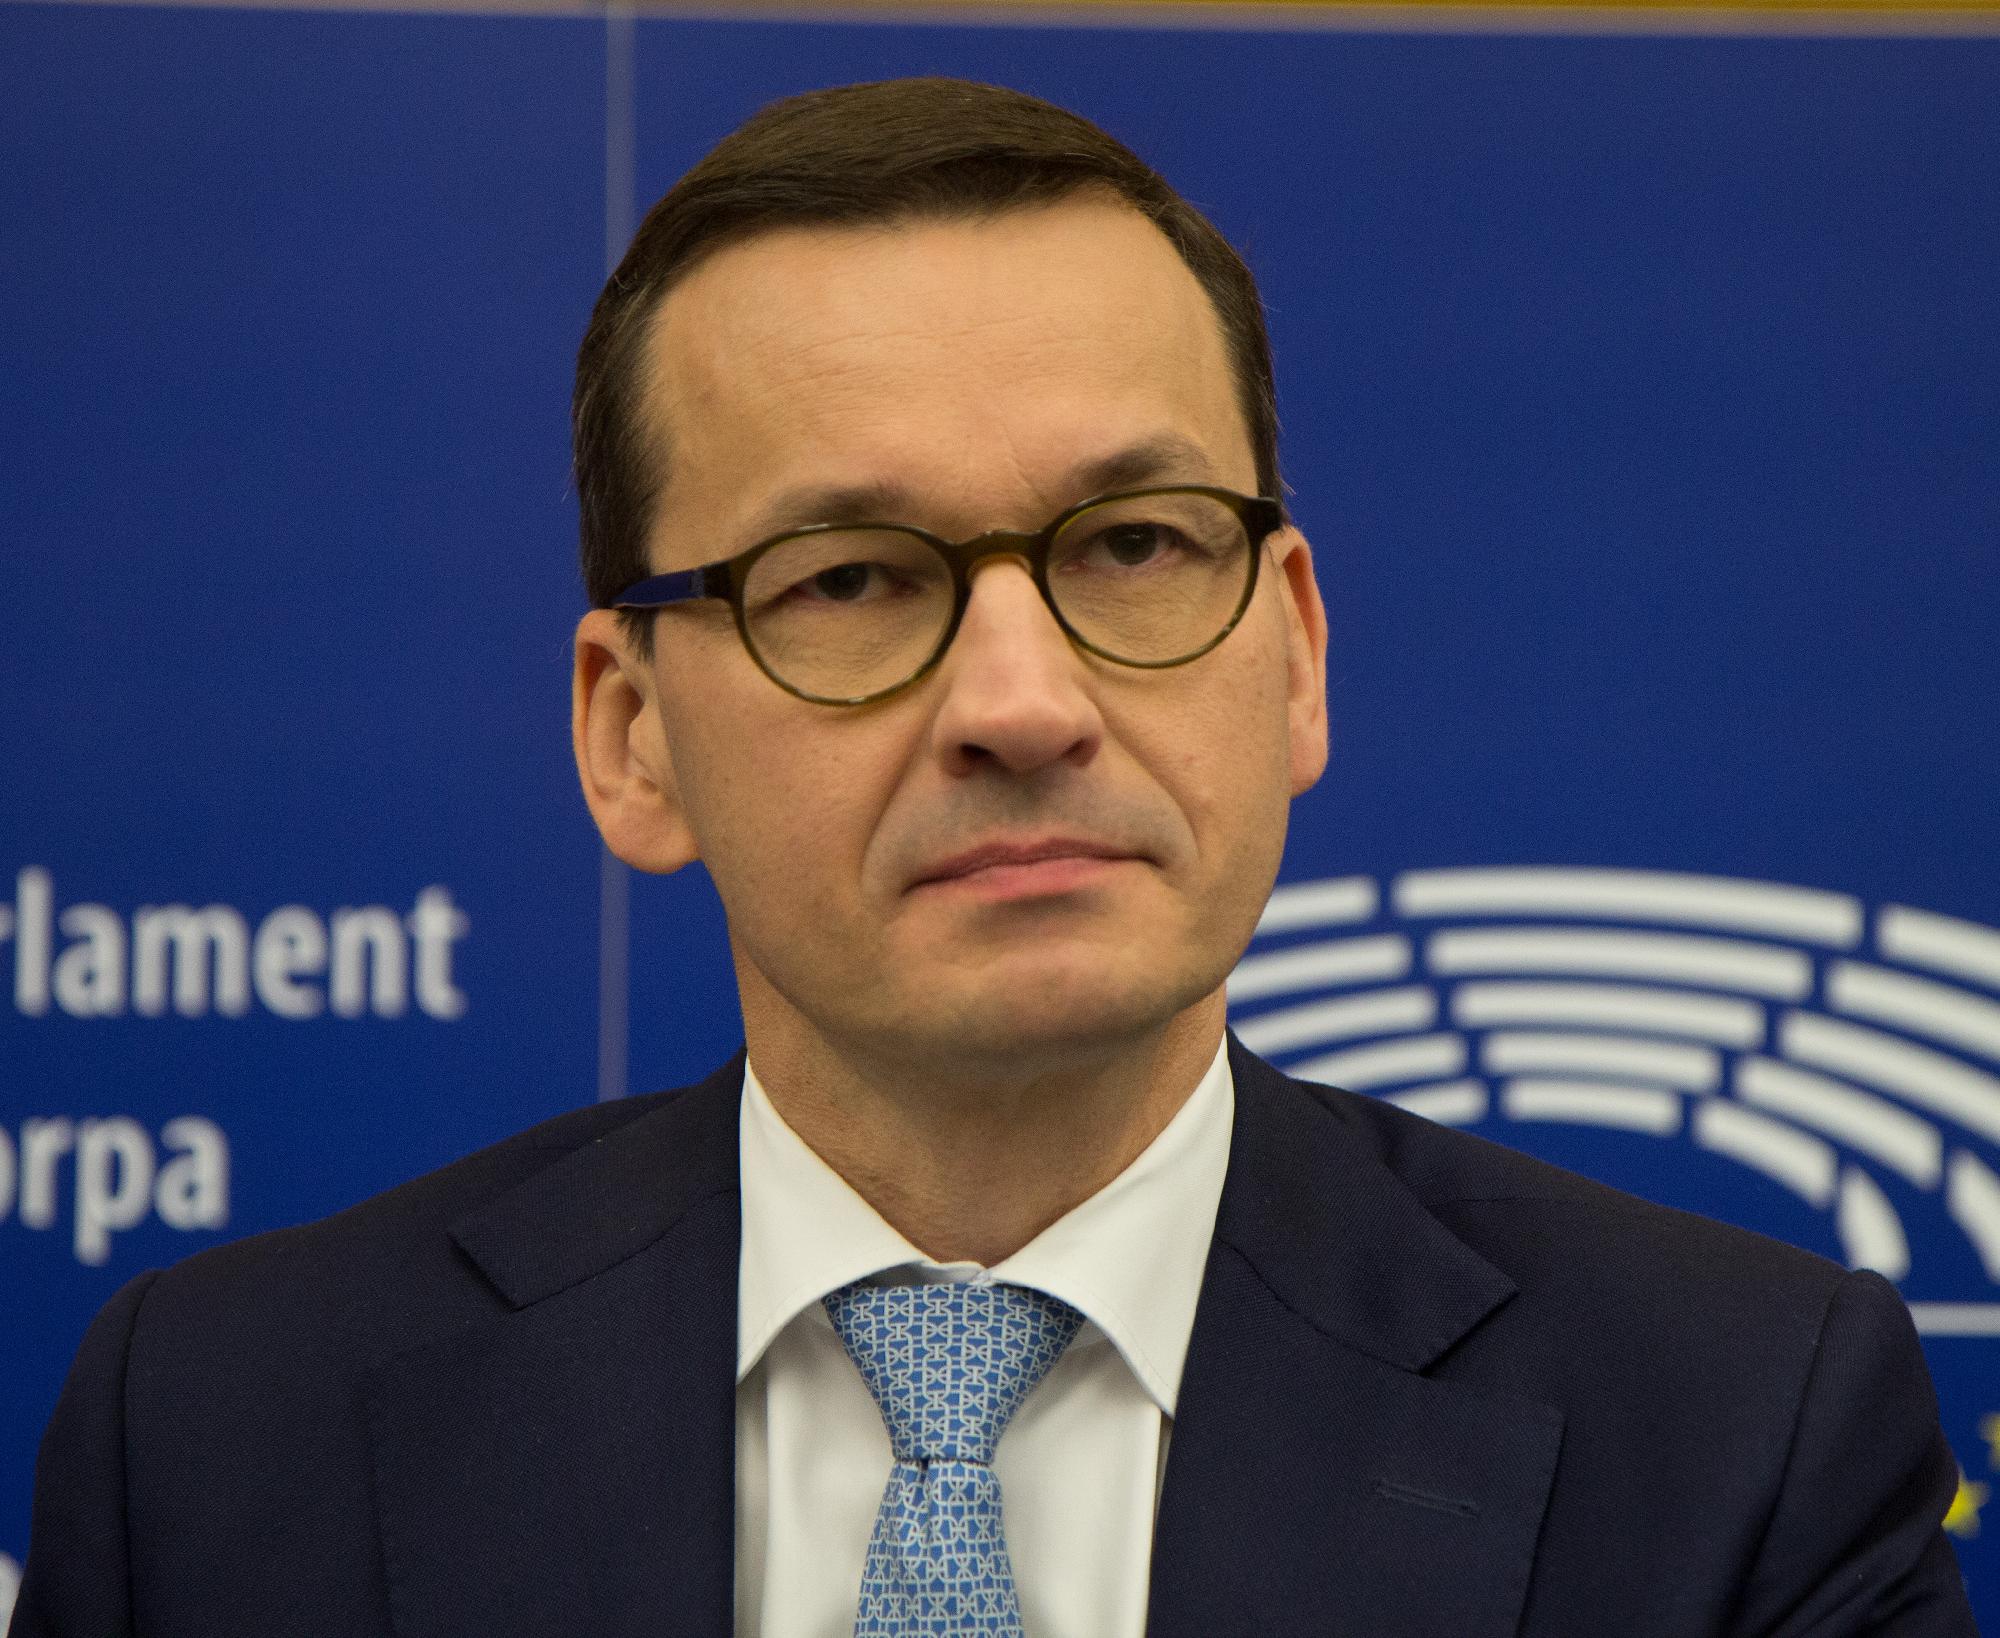 Mateusz Morawiecki: Lengyelország megvétózza az uniós migrációs paktumot